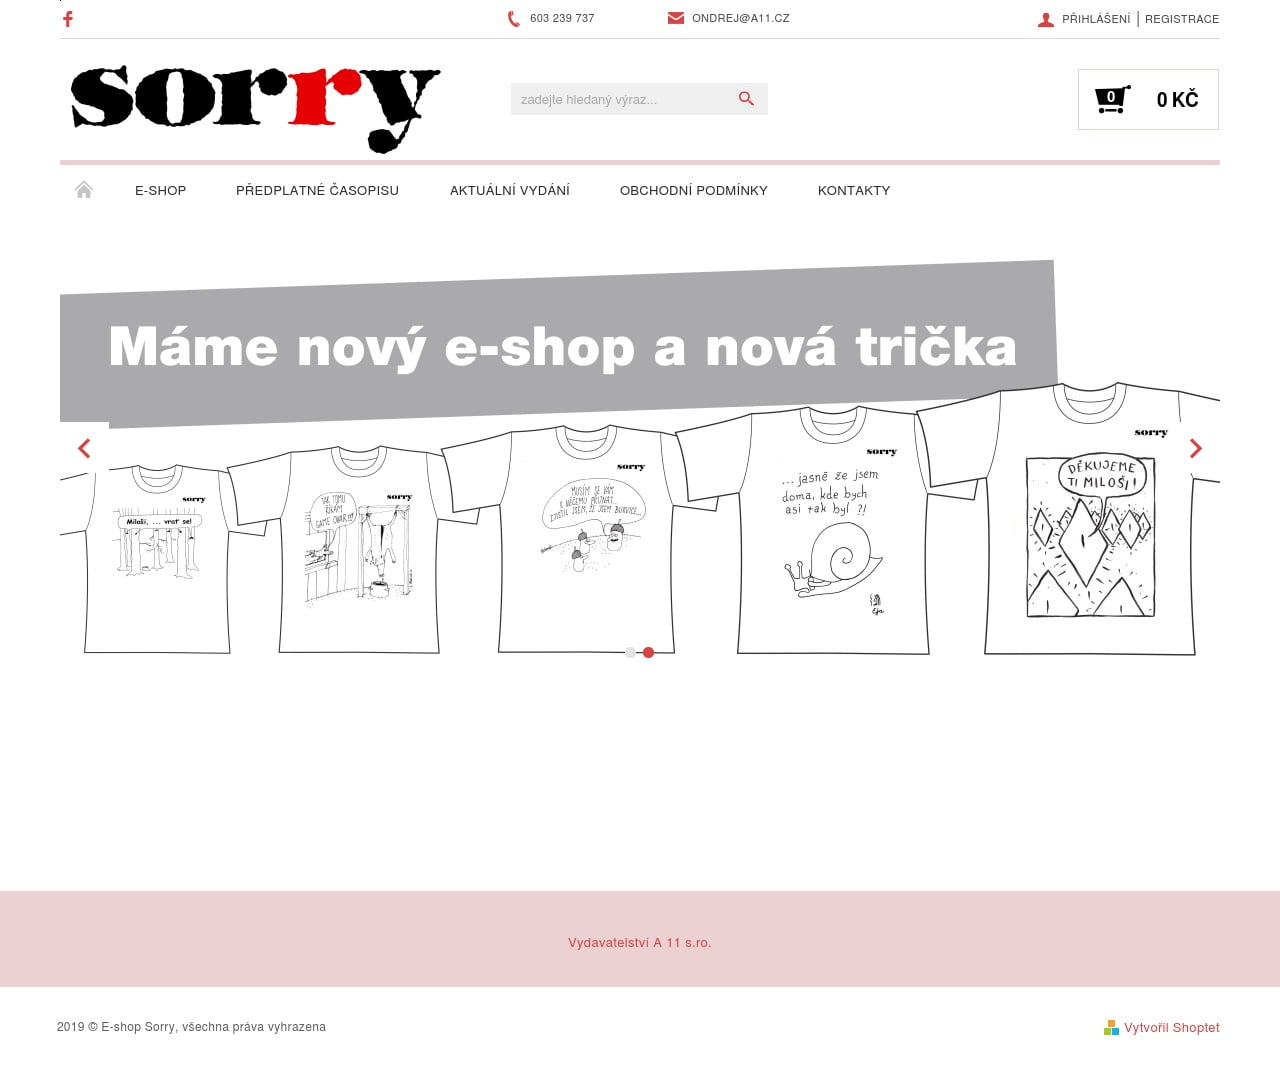 E-shop Sorry